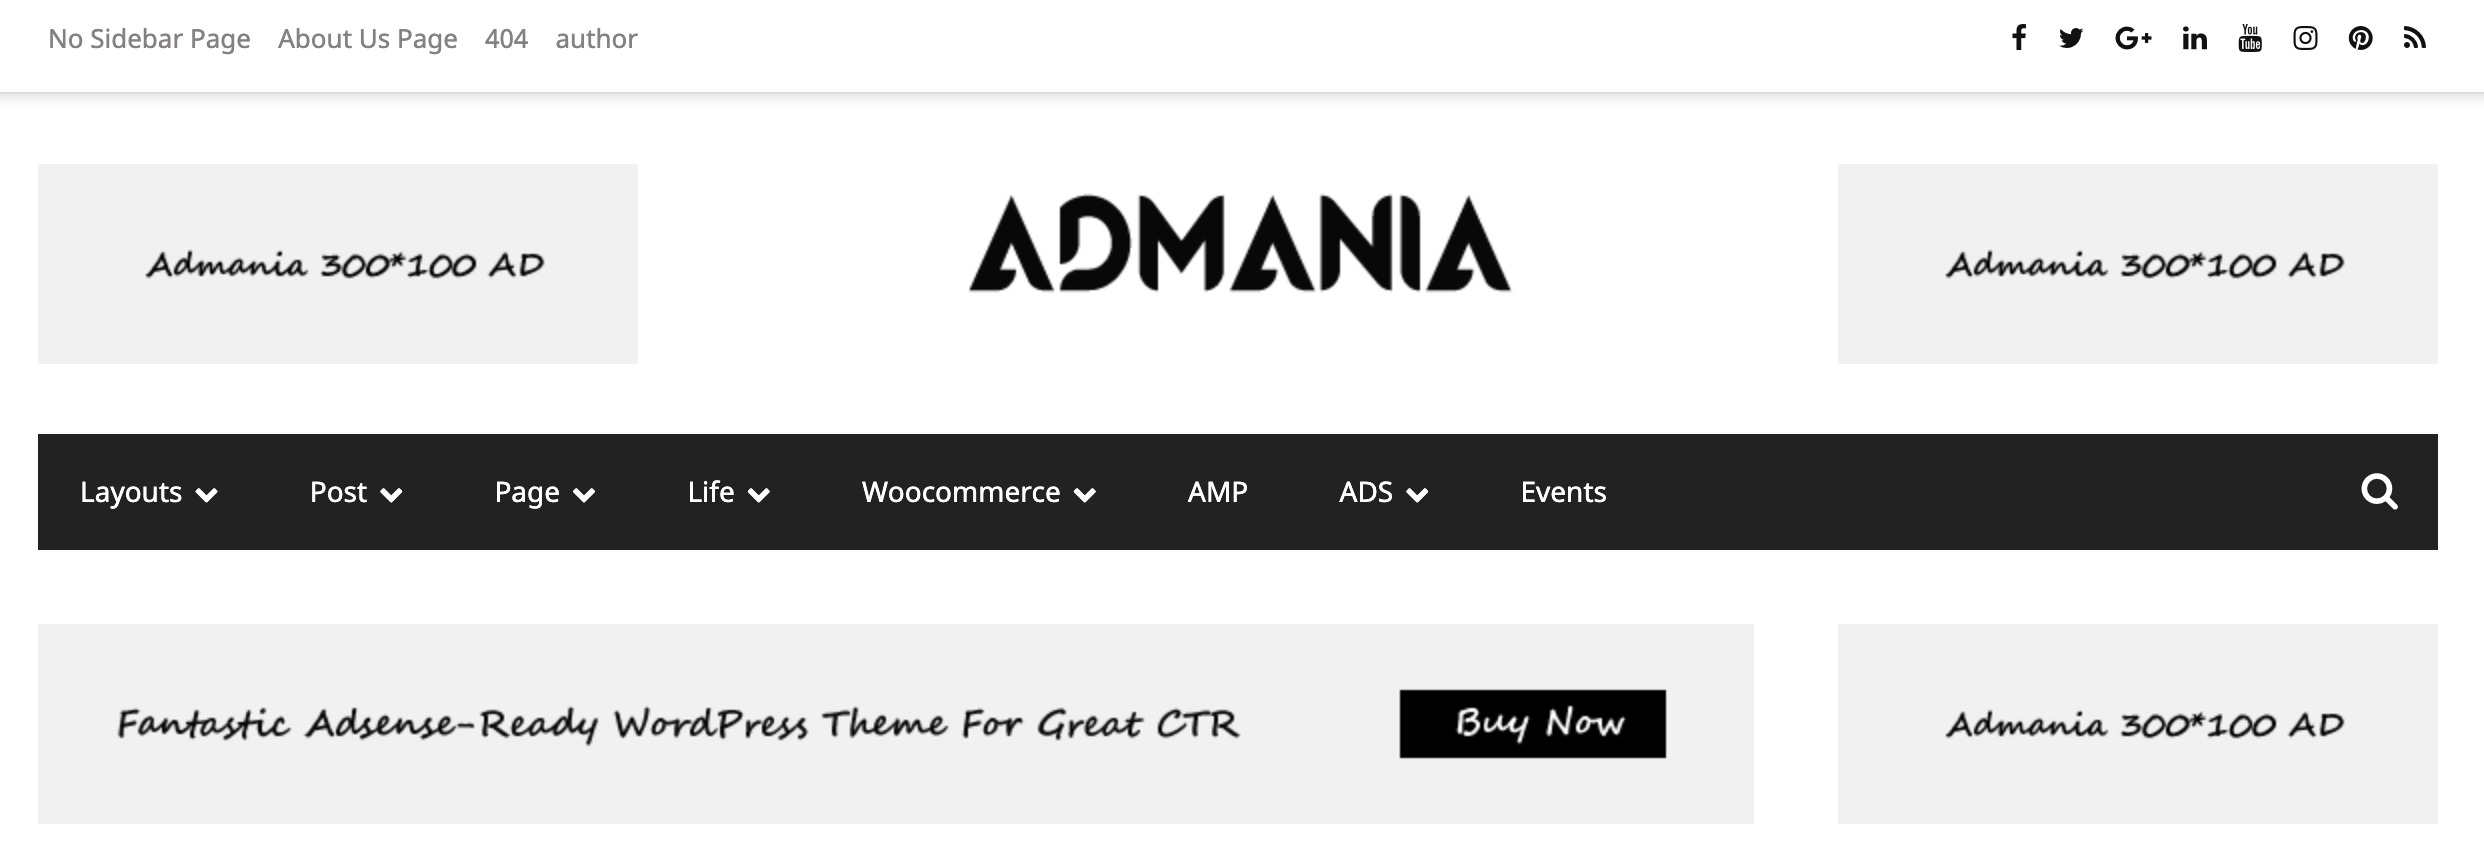 Admania Black Friday Deals 2019